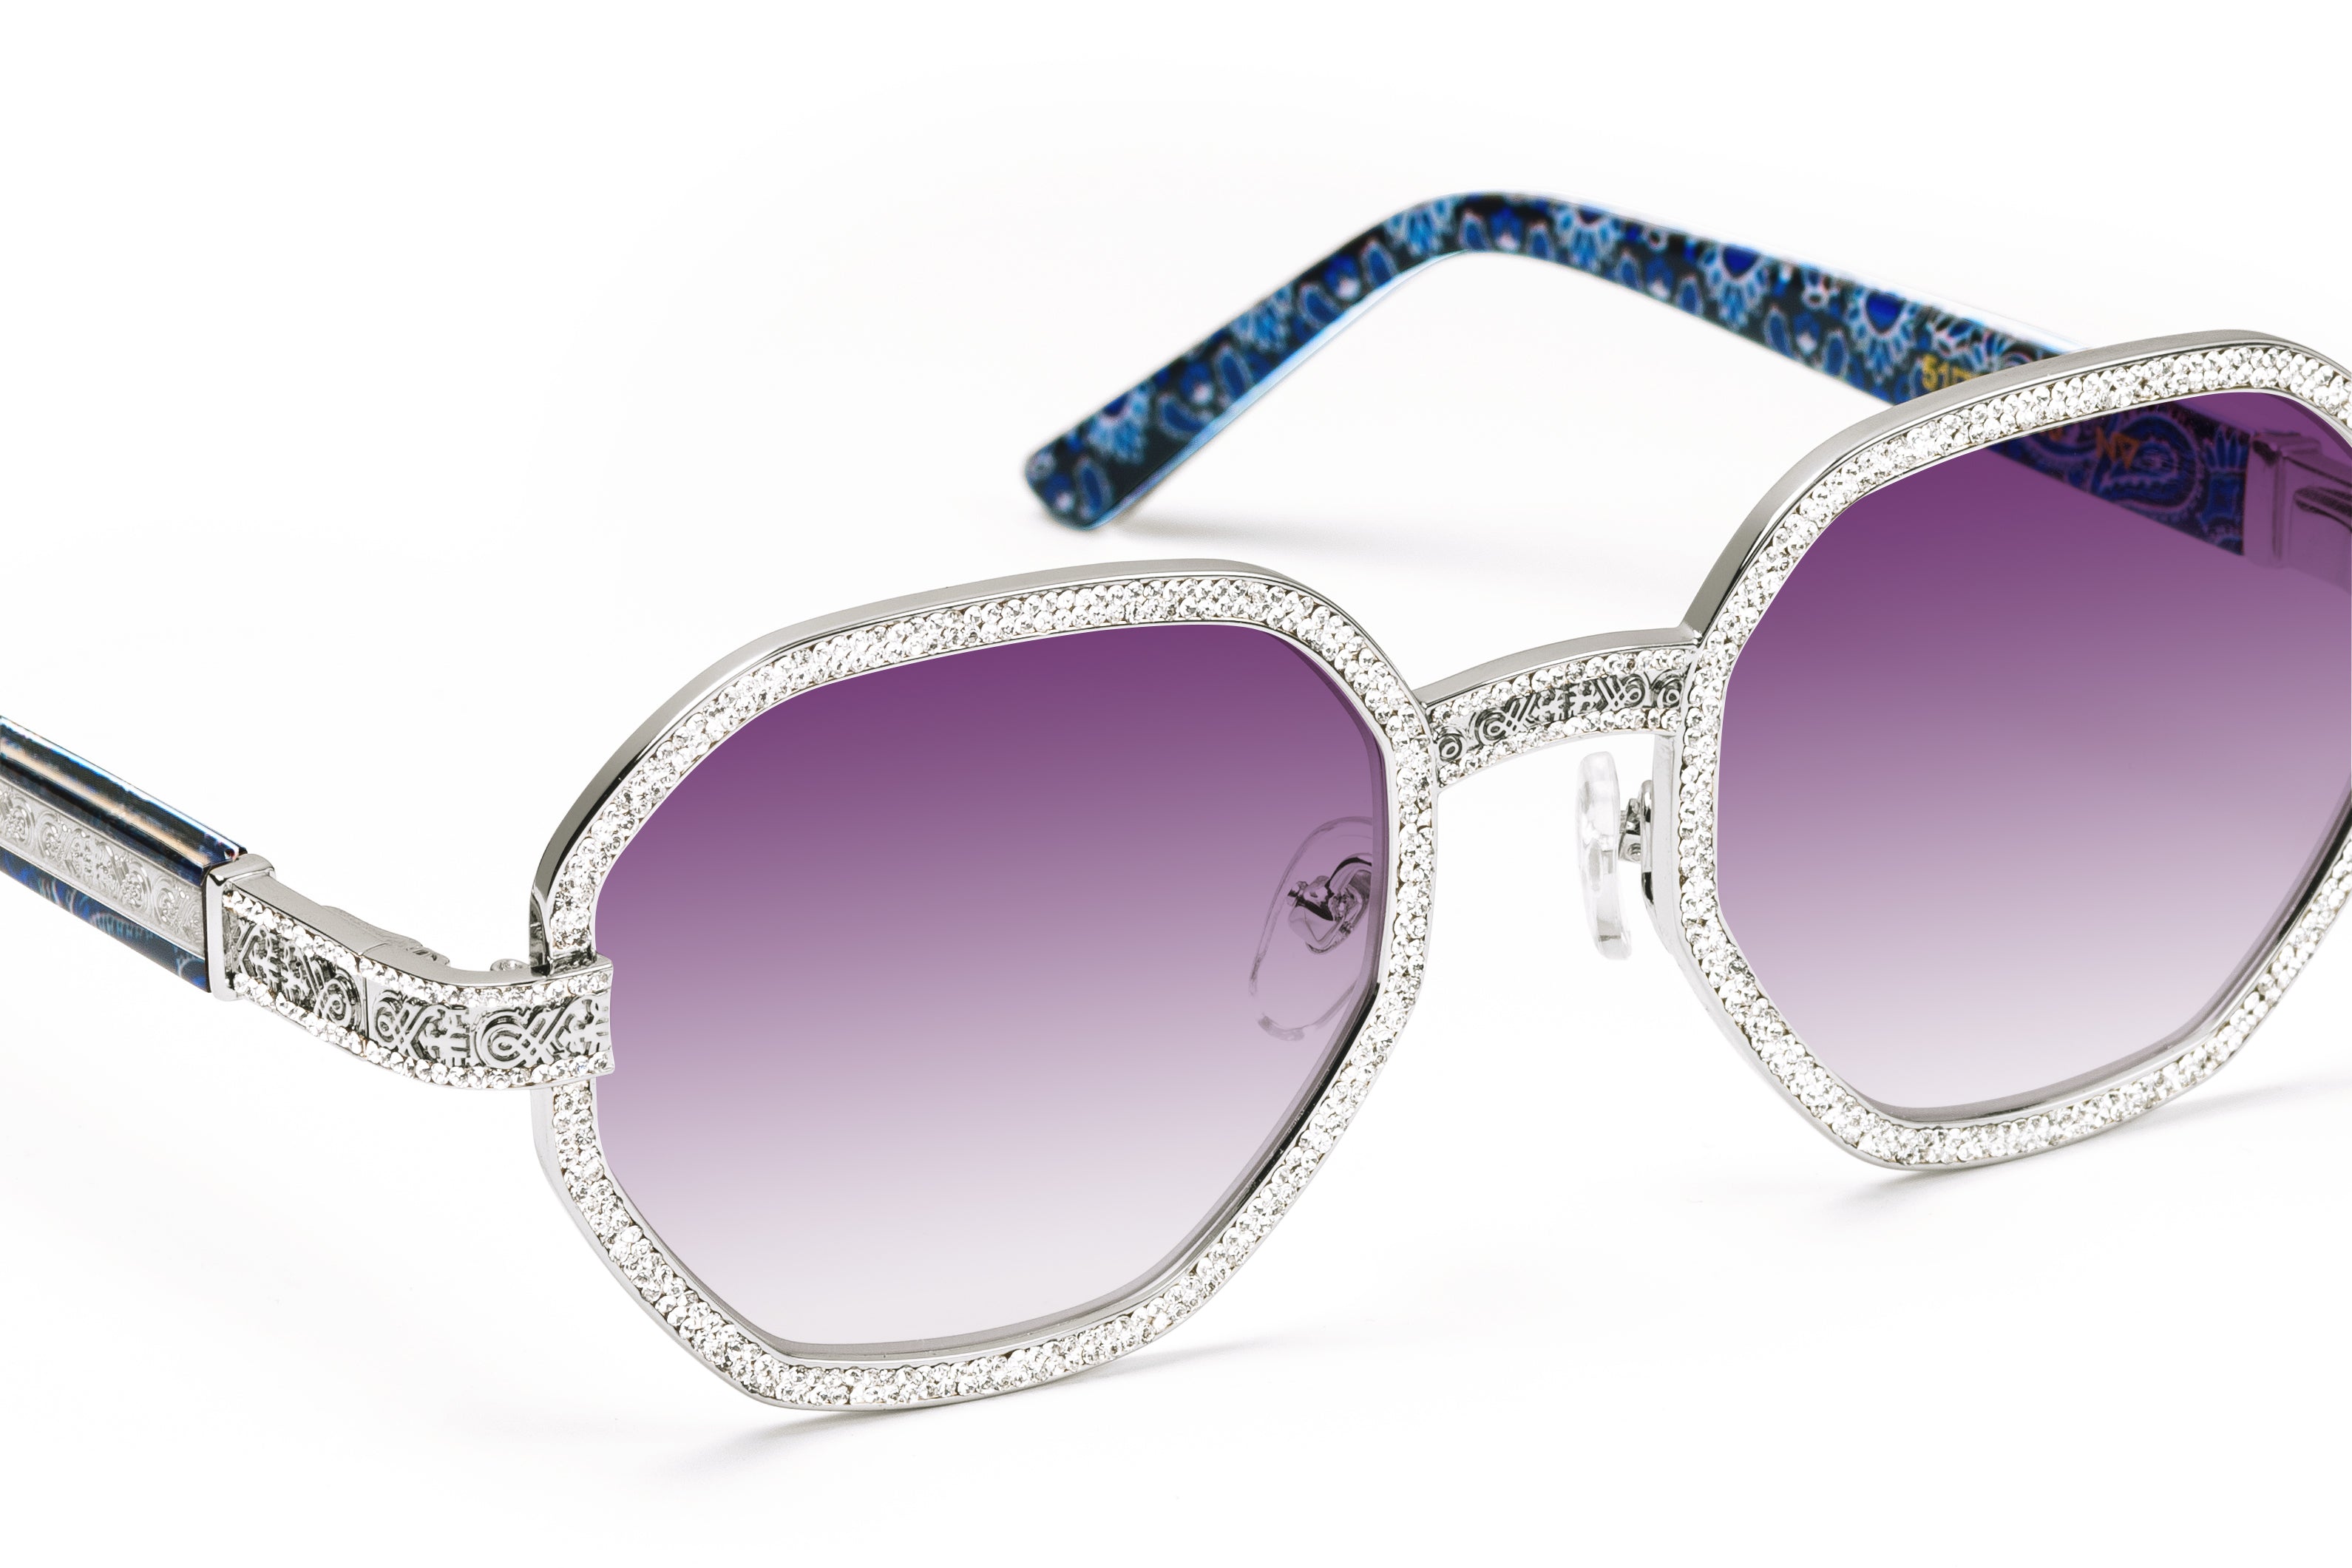 Nouvintage Aunt ViV’s (Purple Reign) & Lilac - Platinum Geometric Sunglasses